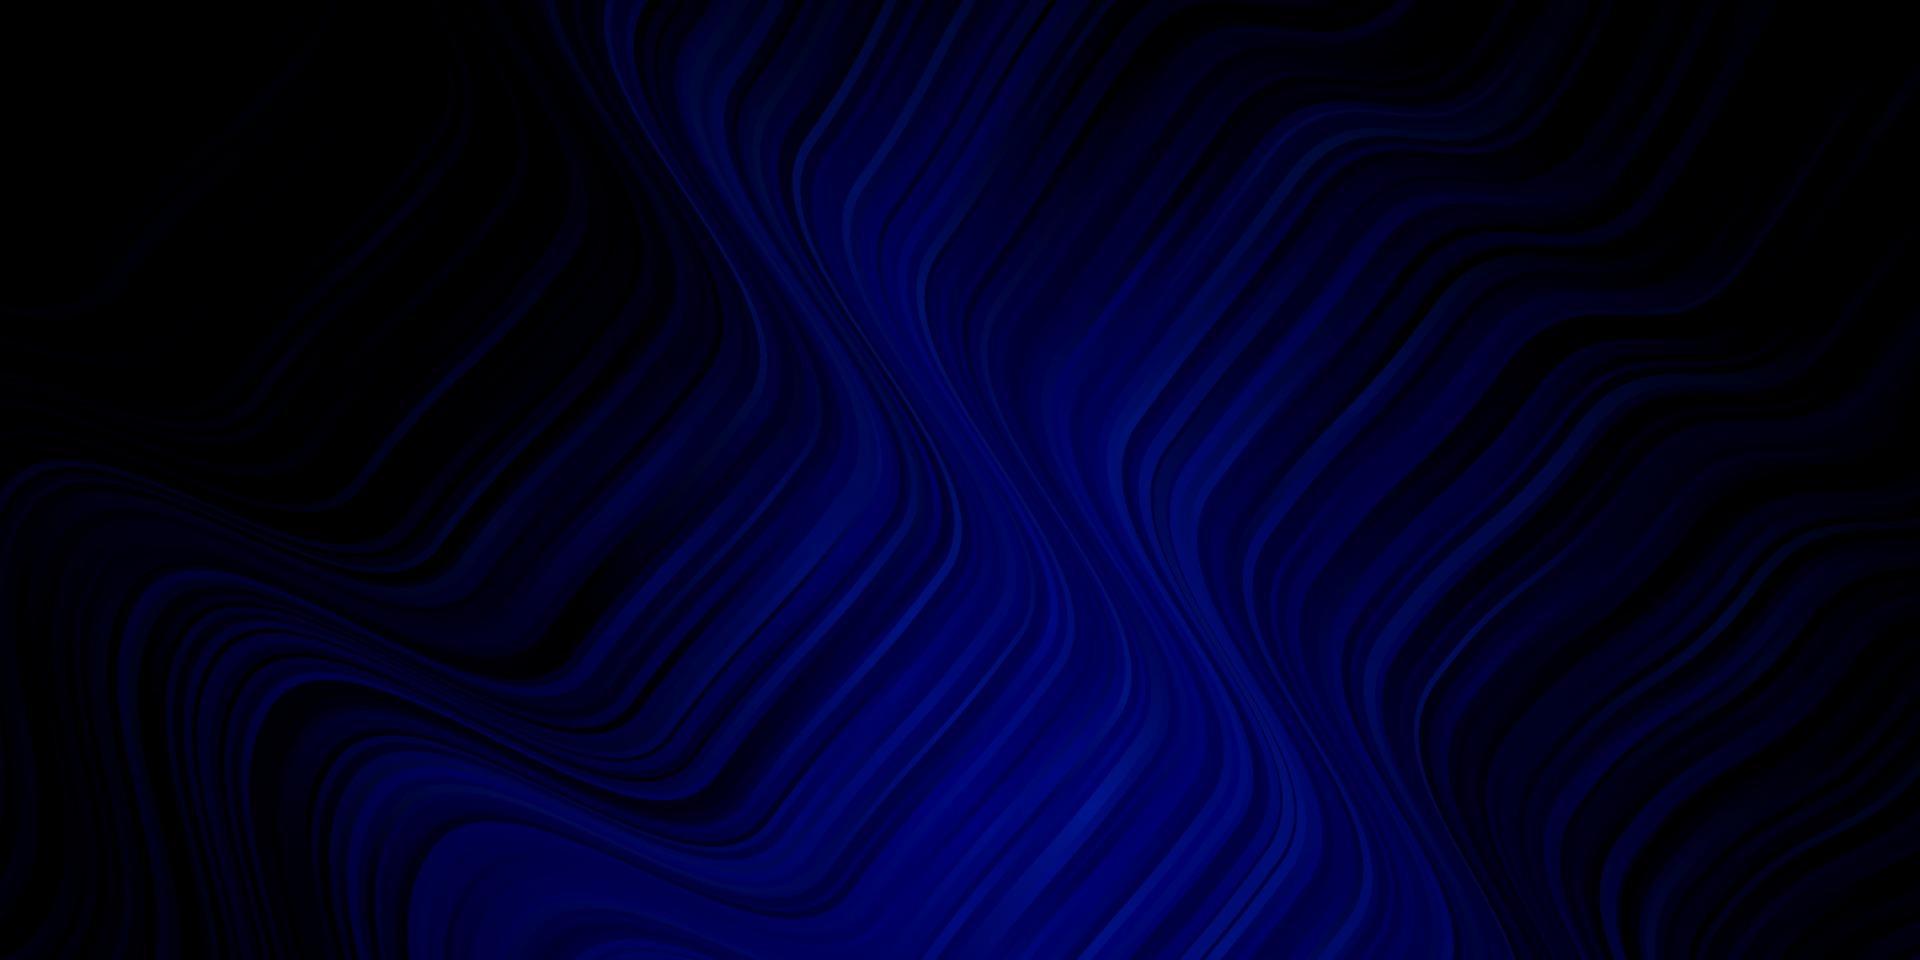 Telón de fondo de vector azul oscuro con arco circular.